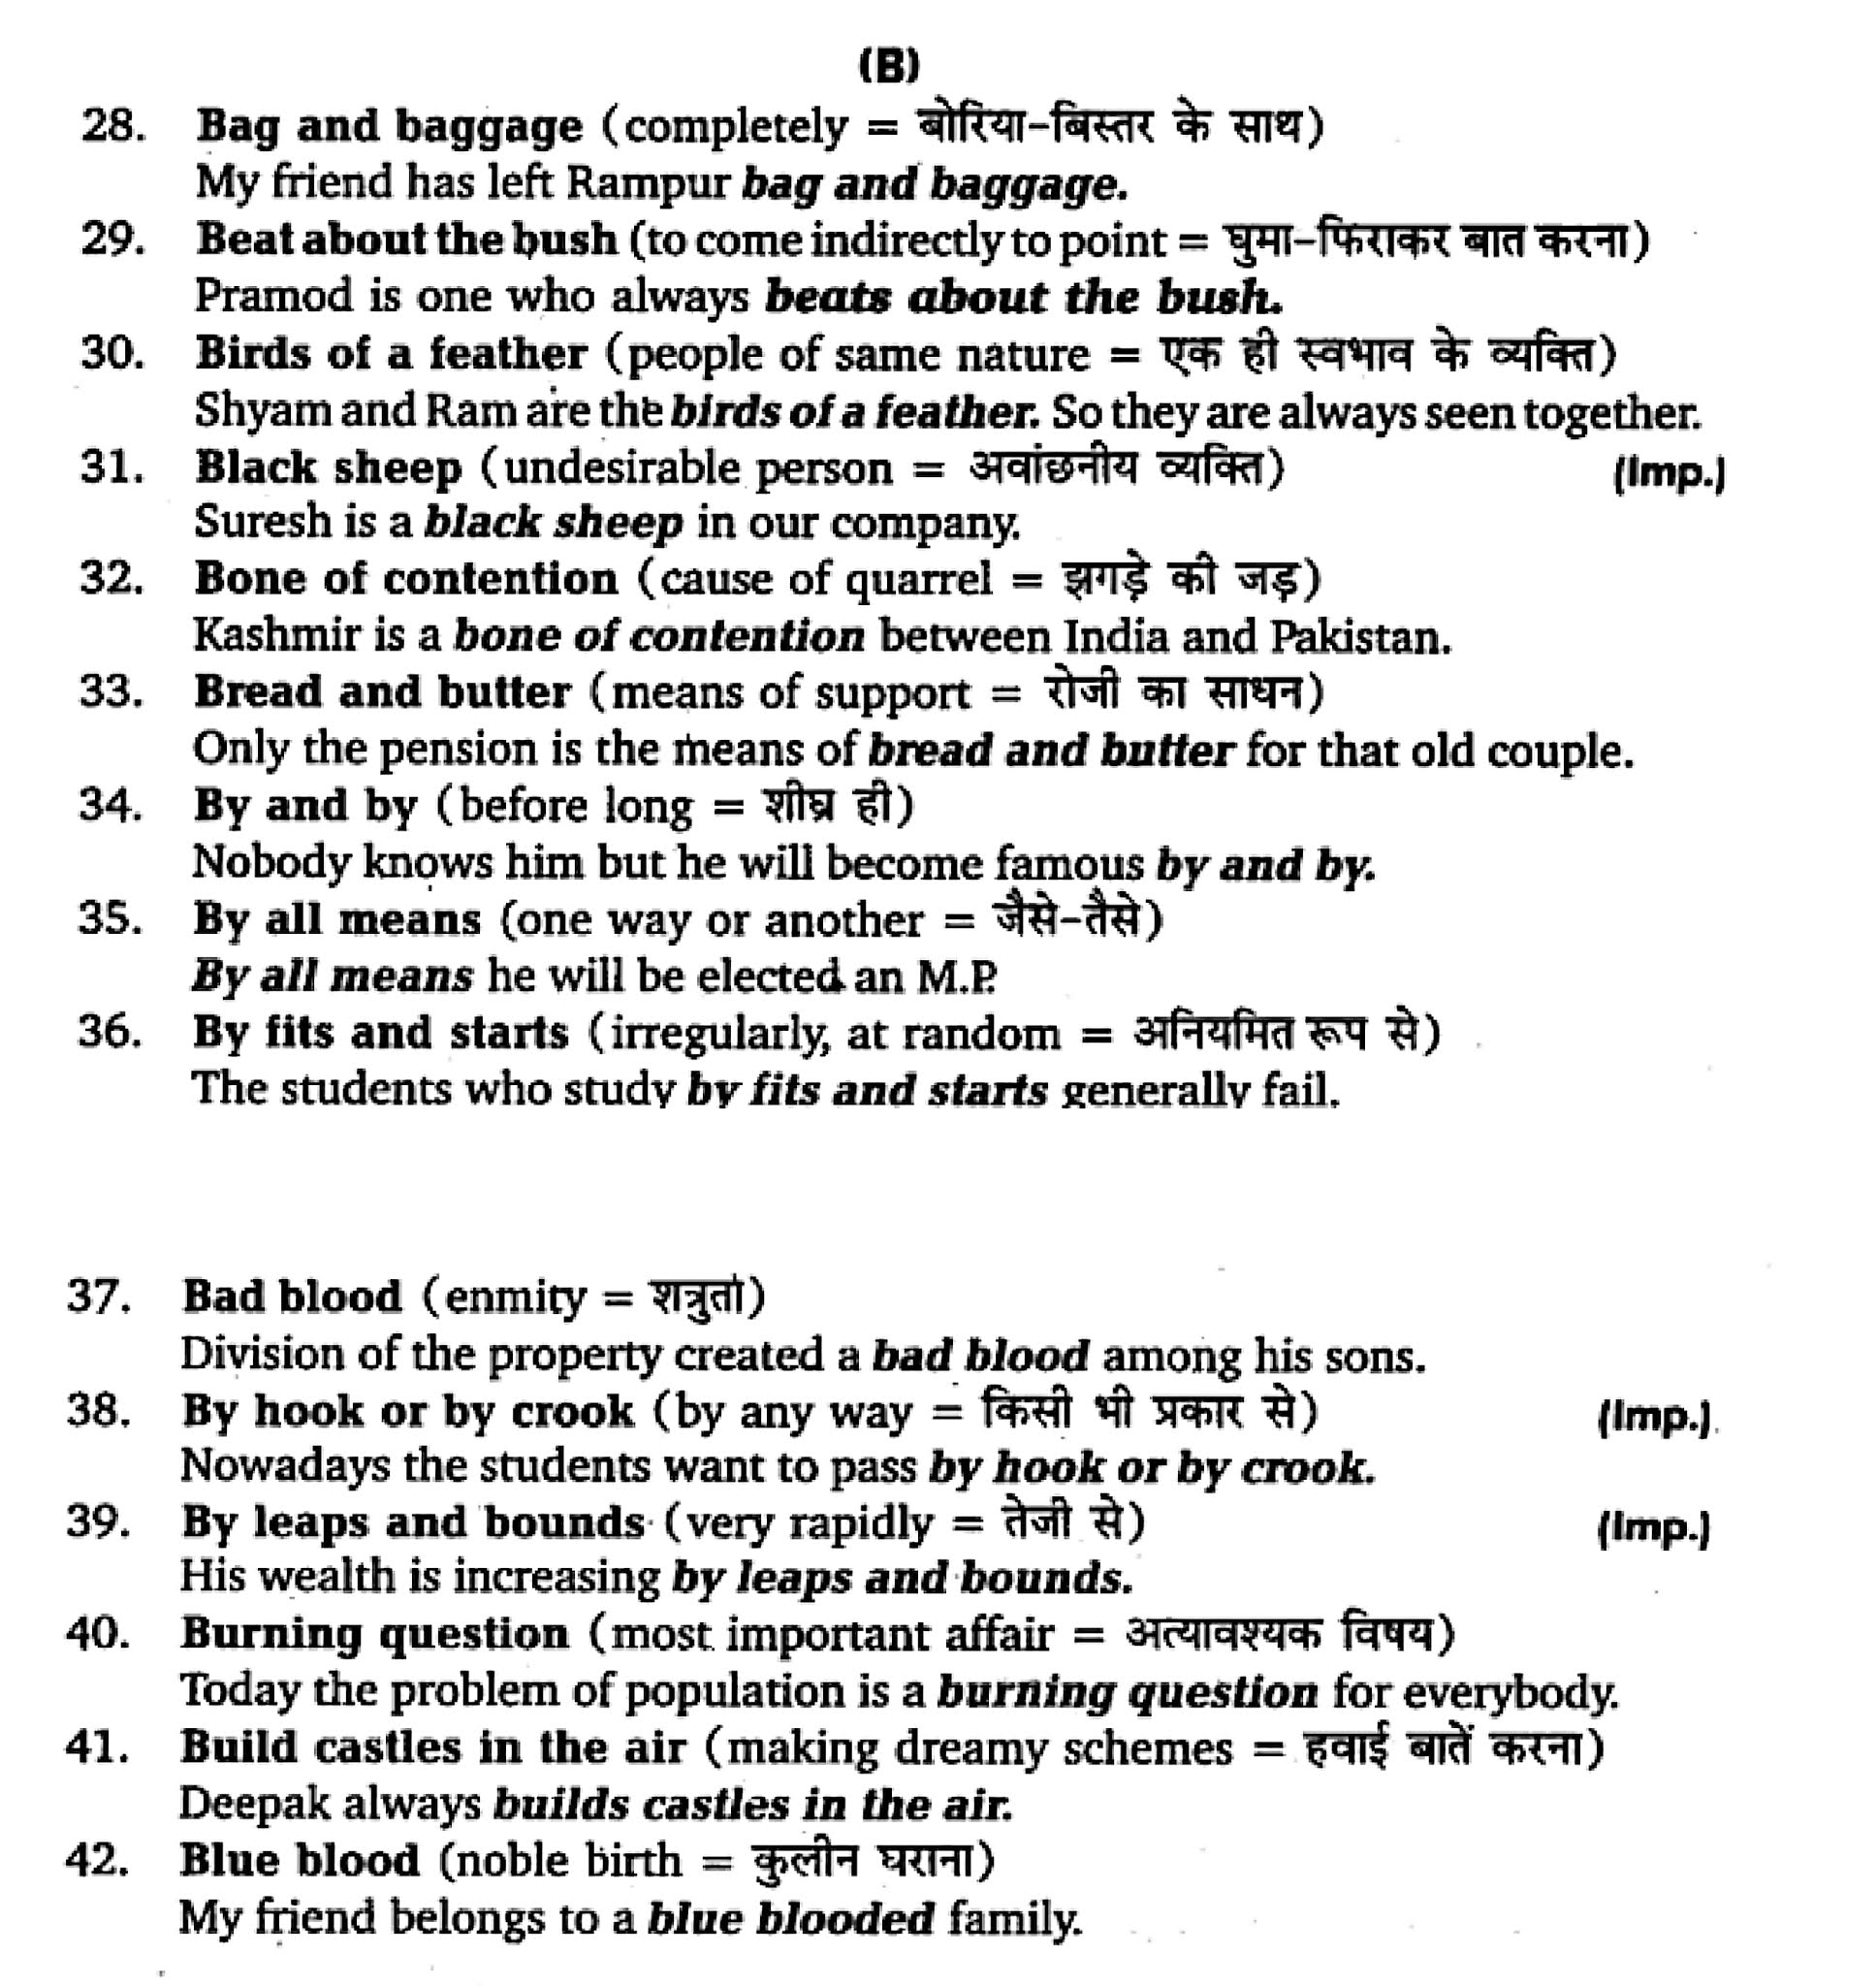 कक्षा 11 अंग्रेज़ी  शब्दावली अध्याय 5  के नोट्स हिंदी में एनसीईआरटी समाधान,   class 11 english Synonyms chapter 5,  class 11 english Synonyms chapter 5 ncert solutions in hindi,  class 11 english Synonyms chapter 5 notes in hindi,  class 11 english Synonyms chapter 5 question answer,  class 11 english Synonyms chapter 5 notes,  11   class Synonyms chapter 5 Synonyms chapter 5 in hindi,  class 11 english Synonyms chapter 5 in hindi,  class 11 english Synonyms chapter 5 important questions in hindi,  class 11 english  chapter 5 notes in hindi,  class 11 english Synonyms chapter 5 test,  class 11 english  chapter 1 Synonyms chapter 5 pdf,  class 11 english Synonyms chapter 5 notes pdf,  class 11 english Synonyms chapter 5 exercise solutions,  class 11 english Synonyms chapter 5, class 11 english Synonyms chapter 5 notes study rankers,  class 11 english Synonyms chapter 5 notes,  class 11 english  chapter 5 notes,   Synonyms chapter 5  class 11  notes pdf,  Synonyms chapter 5 class 11  notes 5051 ncert,   Synonyms chapter 5 class 11 pdf,    Synonyms chapter 5  book,     Synonyms chapter 5 quiz class 11  ,       11  th Synonyms chapter 5    book up board,       up board 11  th Synonyms chapter 5 notes,  कक्षा 11 अंग्रेज़ी  शब्दावली अध्याय 5 , कक्षा 11 अंग्रेज़ी का शब्दावली अध्याय 5  ncert solution in hindi, कक्षा 11 अंग्रेज़ी  के शब्दावली अध्याय 5  के नोट्स हिंदी में, कक्षा 11 का अंग्रेज़ी शब्दावली अध्याय 5 का प्रश्न उत्तर, कक्षा 11 अंग्रेज़ी  शब्दावली अध्याय 5  के नोट्स, 11 कक्षा अंग्रेज़ी  शब्दावली अध्याय 5   हिंदी में,कक्षा 11 अंग्रेज़ी  शब्दावली अध्याय 5  हिंदी में, कक्षा 11 अंग्रेज़ी  शब्दावली अध्याय 5  महत्वपूर्ण प्रश्न हिंदी में,कक्षा 11 के अंग्रेज़ी के नोट्स हिंदी में,अंग्रेज़ी  कक्षा 11 नोट्स pdf,  अंग्रेज़ी  कक्षा 11 नोट्स 2021 ncert,  अंग्रेज़ी  कक्षा 11 pdf,  अंग्रेज़ी  पुस्तक,  अंग्रेज़ी की बुक,  अंग्रेज़ी  प्रश्नोत्तरी class 11  , 11   वीं अंग्रेज़ी  पुस्तक up board,  बिहार बोर्ड 11  पुस्तक वीं अंग्रेज़ी नोट्स,    11th Prose chapter 1   book in hindi, 11  th Prose chapter 1 notes in hindi, cbse books for class 11  , cbse books in hindi, cbse ncert books, class 11   Prose chapter 1   notes in hindi,  class 11   hindi ncert solutions, Prose chapter 1 2020, Prose chapter 1  2021, Prose chapter 1   2022, Prose chapter 1  book class 11  , Prose chapter 1 book in hindi, Prose chapter 1  class 11   in hindi, Prose chapter 1   notes for class 11   up board in hindi, ncert all books, ncert app in hindi, ncert book solution, ncert books class 10, ncert books class 11  , ncert books for class 7, ncert books for upsc in hindi, ncert books in hindi class 10, ncert books in hindi for class 11 Prose chapter 1  , ncert books in hindi for class 6, ncert books in hindi pdf, ncert class 11 hindi book, ncert english book, ncert Prose chapter 1  book in hindi, ncert Prose chapter 1  books in hindi pdf, ncert Prose chapter 1 class 11 ,  ncert in hindi,  old ncert books in hindi, online ncert books in hindi,  up board 11  th, up board 11  th syllabus, up board class 10 hindi book, up board class 11   books, up board class 11   new syllabus, up board intermediate Prose chapter 1  syllabus, up board intermediate syllabus 2021, Up board Master 2021, up board model paper 2021, up board model paper all subject, up board new syllabus of class 11  th Prose chapter 1 ,   11 वीं अंग्रेज़ी पुस्तक हिंदी में, 11  वीं अंग्रेज़ी  नोट्स हिंदी में, कक्षा 11   के लिए सीबीएससी पुस्तकें, कक्षा 11   अंग्रेज़ी नोट्स हिंदी में, कक्षा 11   हिंदी एनसीईआरटी समाधान,  अंग्रेज़ी  बुक इन हिंदी, अंग्रेज़ी क्लास 11   हिंदी में,  एनसीईआरटी अंग्रेज़ी की किताब हिंदी में,  बोर्ड 11 वीं तक, 11 वीं तक की पाठ्यक्रम, बोर्ड कक्षा 10 की हिंदी पुस्तक , बोर्ड की कक्षा 11   की किताबें, बोर्ड की कक्षा 11 की नई पाठ्यक्रम, बोर्ड अंग्रेज़ी 2020, यूपी   बोर्ड अंग्रेज़ी  2021, यूपी  बोर्ड अंग्रेज़ी 2022, यूपी  बोर्ड अंग्रेज़ी    2023, यूपी  बोर्ड इंटरमीडिएट अंग्रेज़ी सिलेबस, यूपी  बोर्ड इंटरमीडिएट सिलेबस 2021, यूपी  बोर्ड मास्टर 2021, यूपी  बोर्ड मॉडल पेपर 2021, यूपी  मॉडल पेपर सभी विषय, यूपी  बोर्ड न्यू क्लास का सिलेबस  11   वीं अंग्रेज़ी, अप बोर्ड पेपर 2021, यूपी बोर्ड सिलेबस 2021, यूपी बोर्ड सिलेबस 2022,